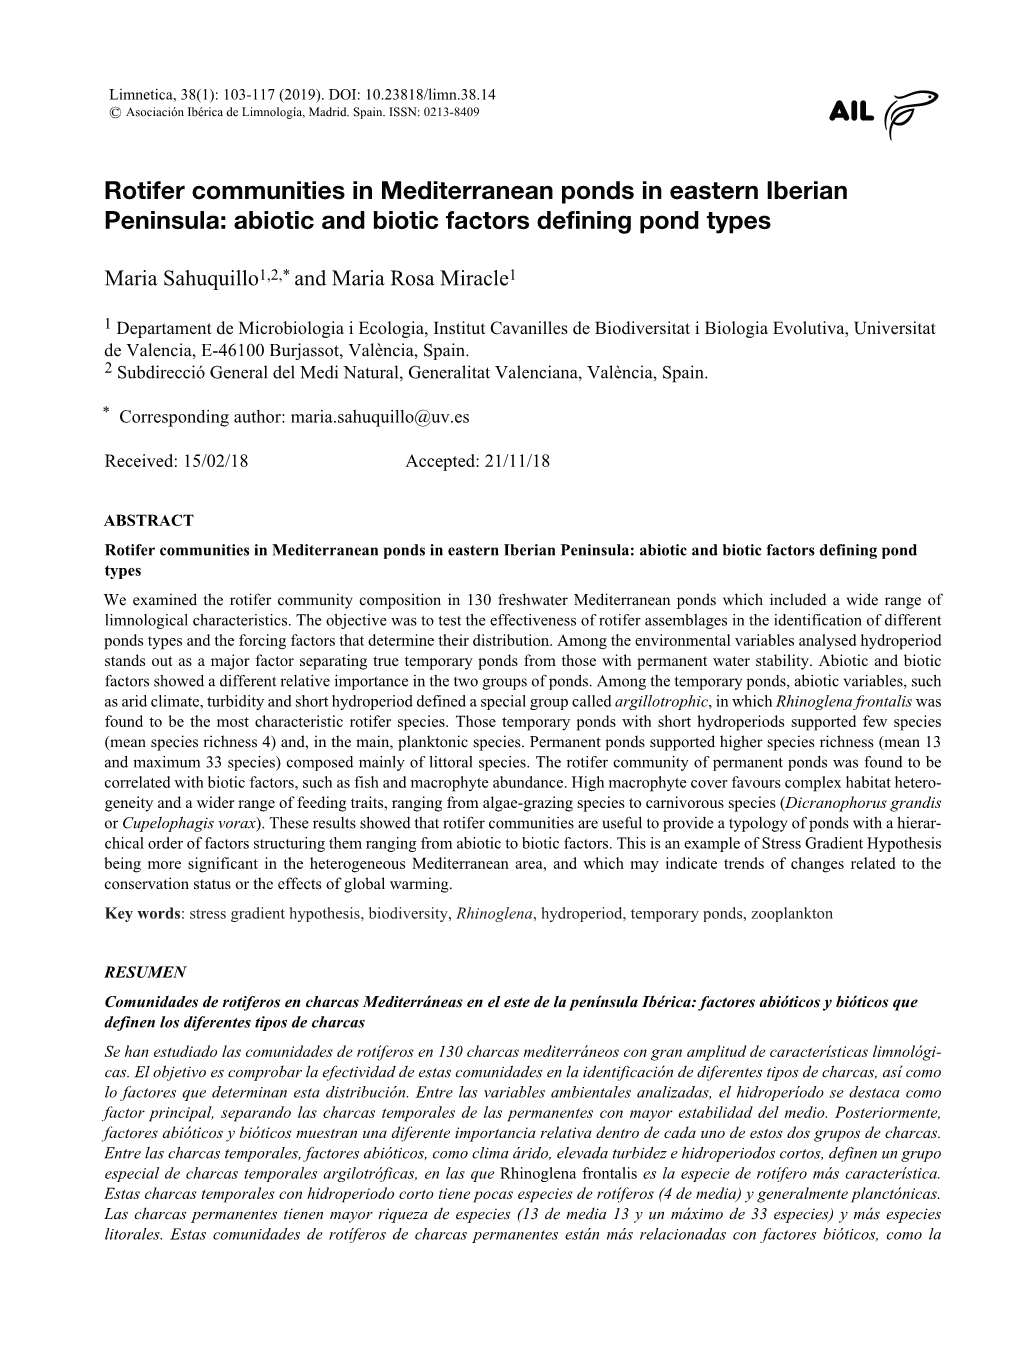 Rotifer Communities in Mediterranean Ponds in Eastern Iberian Peninsula: Abiotic and Biotic Factors Defining Pond Types